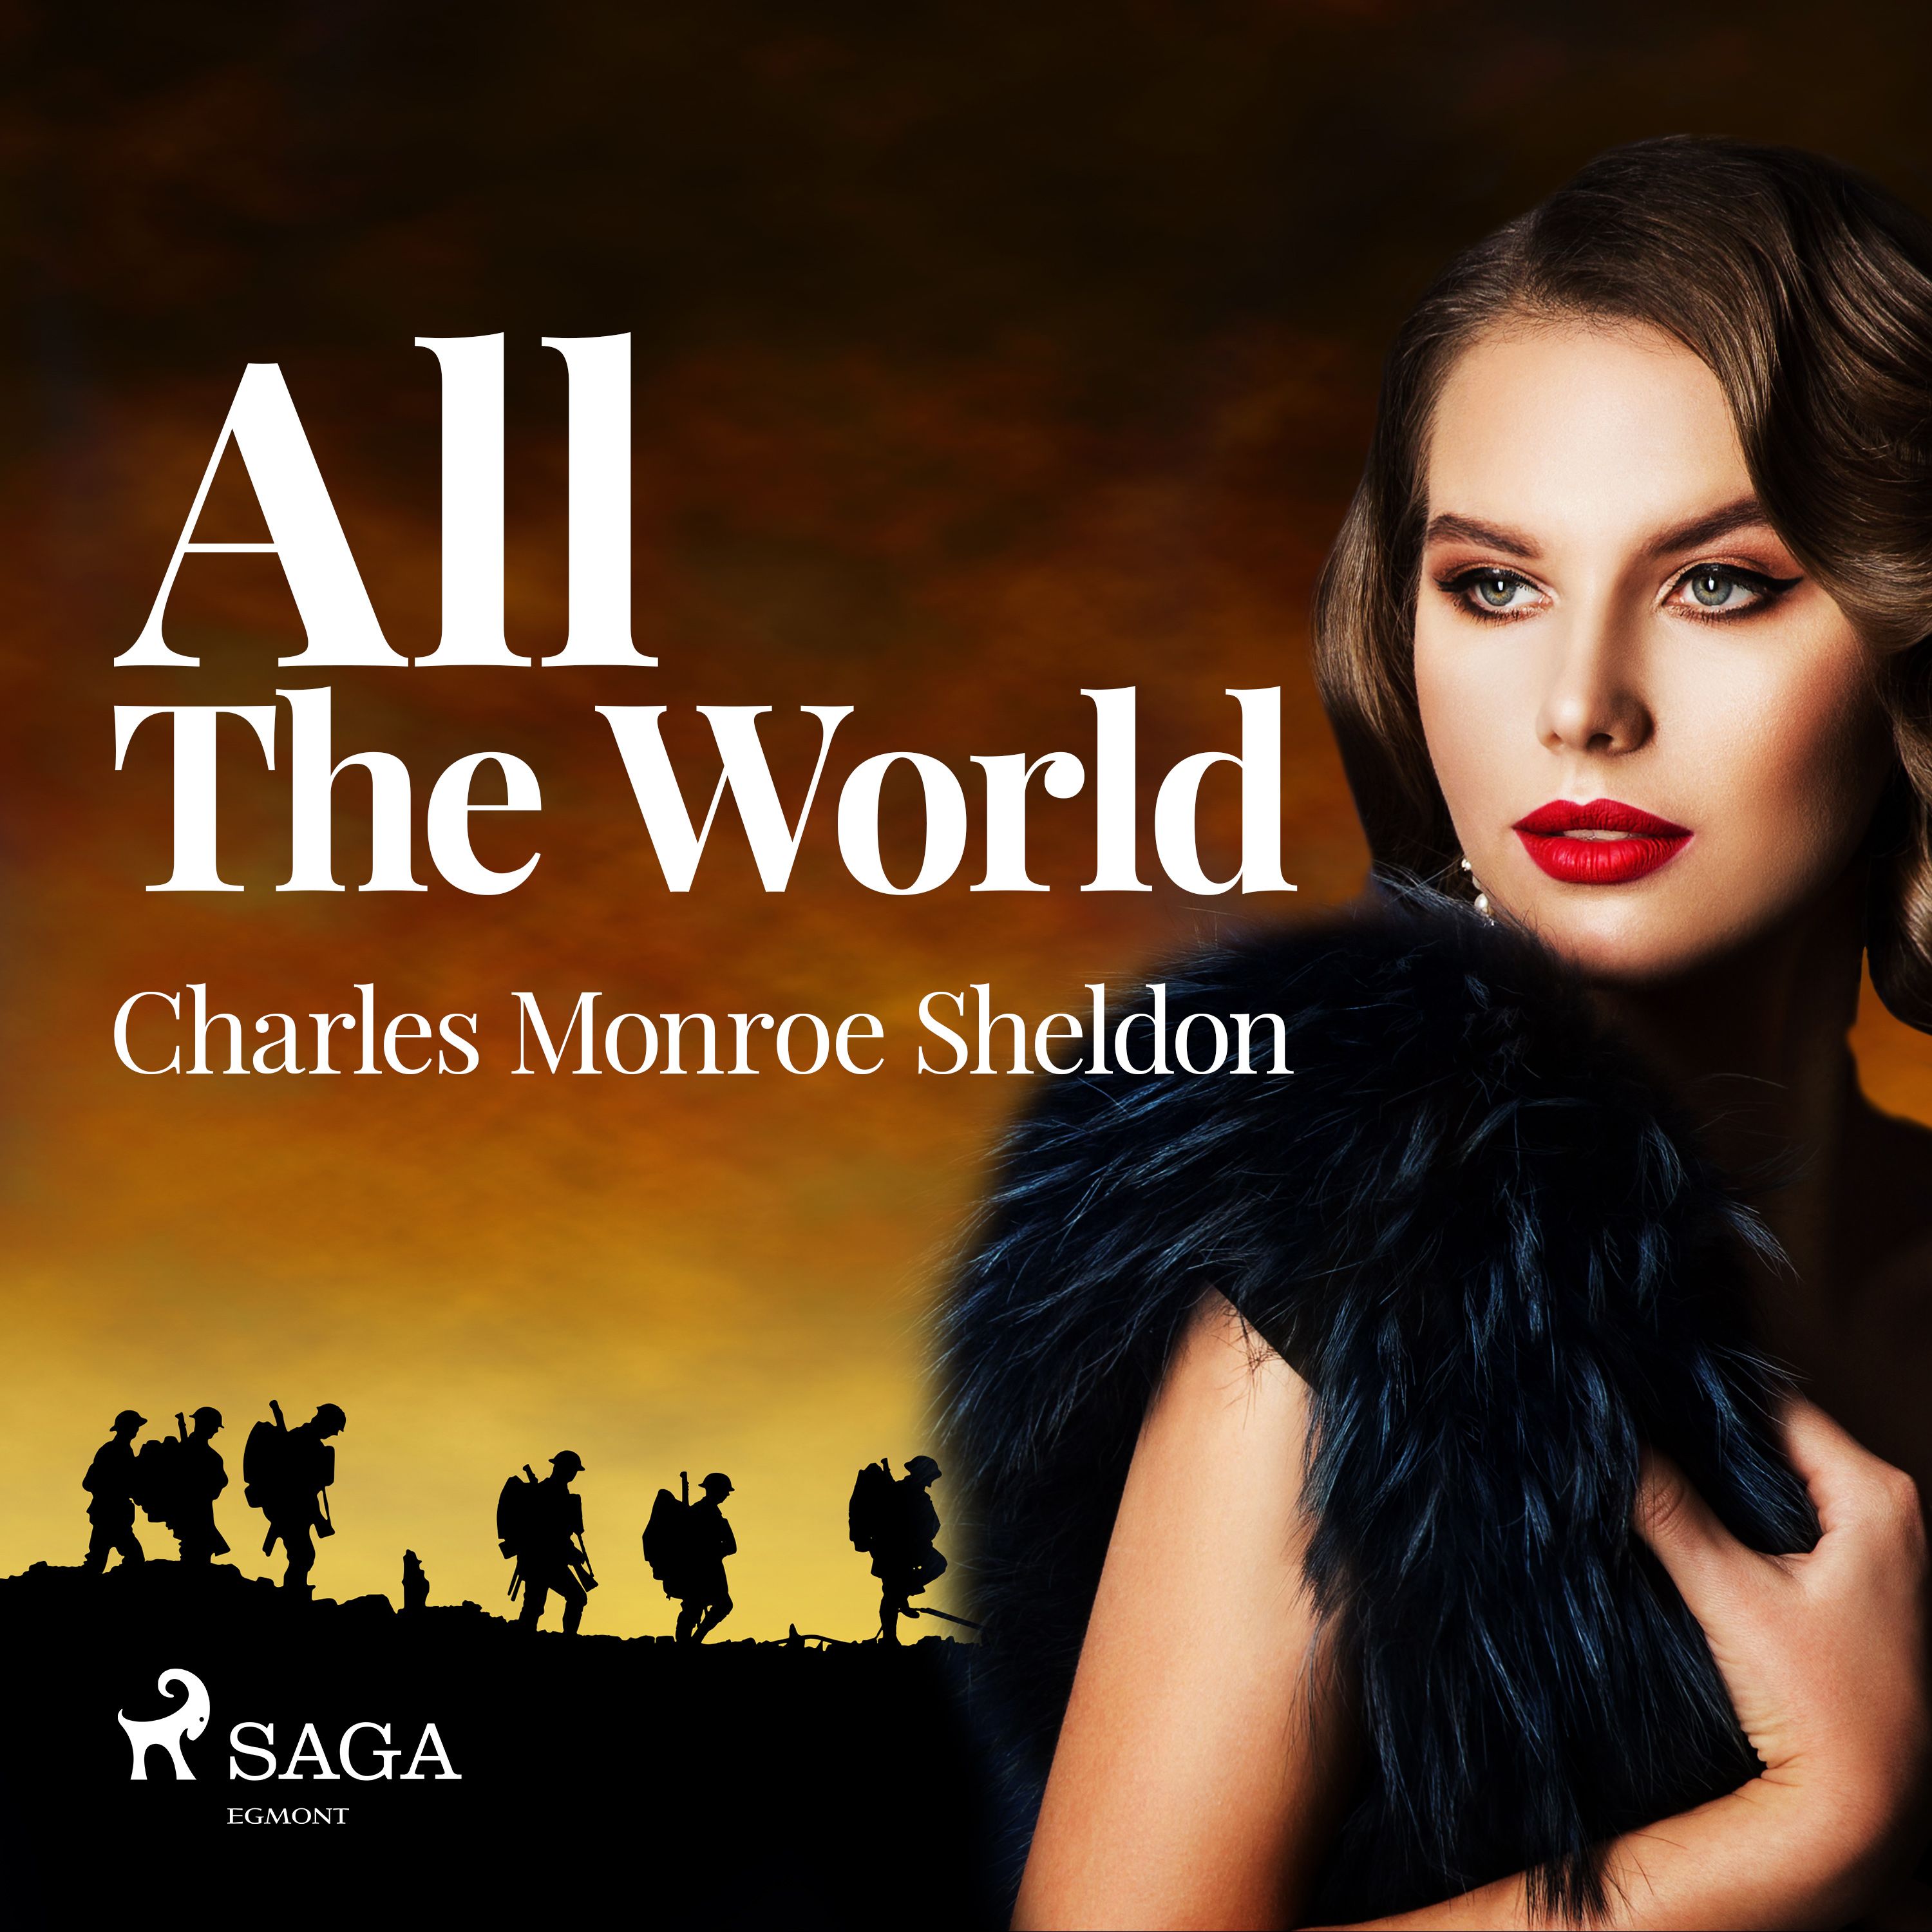 All The World, lydbog af Charles Monroe Sheldon